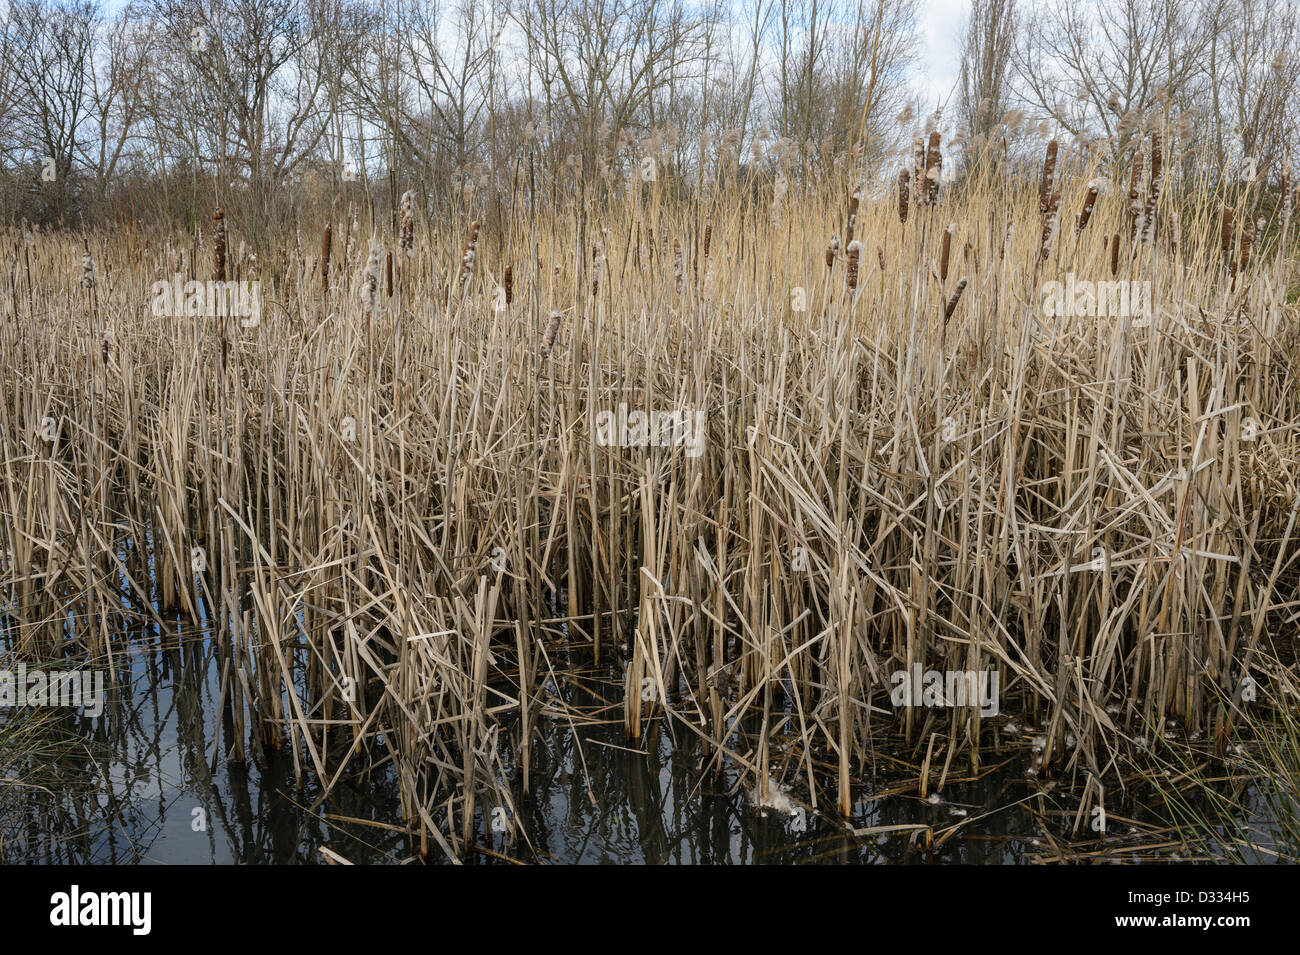 Feuchtgebiet mit Seggen und Binsen Einpflanzen. Fluß Quaggy Flut Linderung Schema, Sutcliffe Park, London, UK. Stockfoto